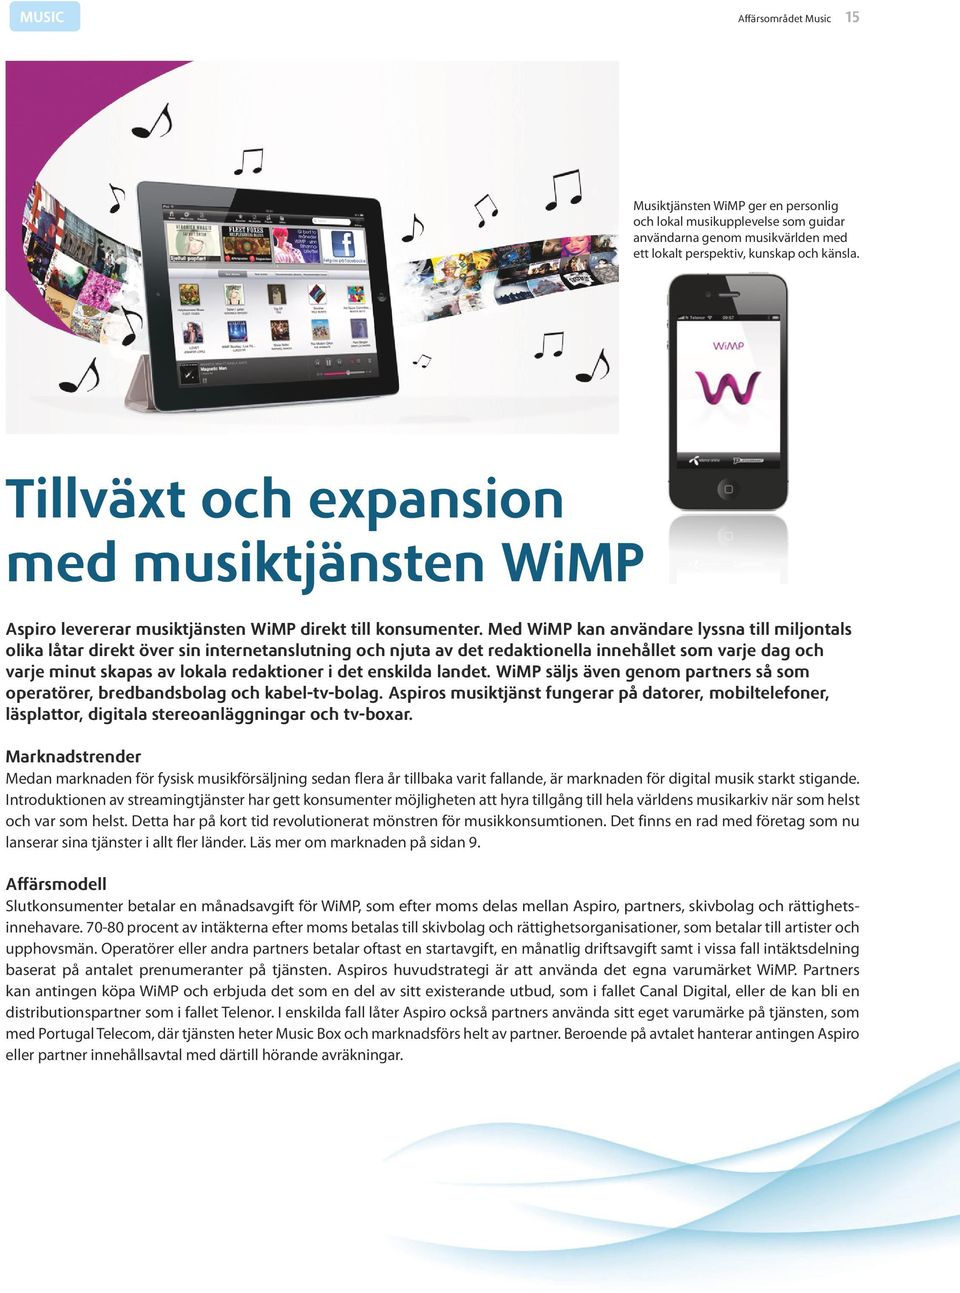 Med WiMP kan användare lyssna till miljontals olika låtar direkt över sin internetanslutning och njuta av det redaktionella innehållet som varje dag och varje minut skapas av lokala redaktioner i det